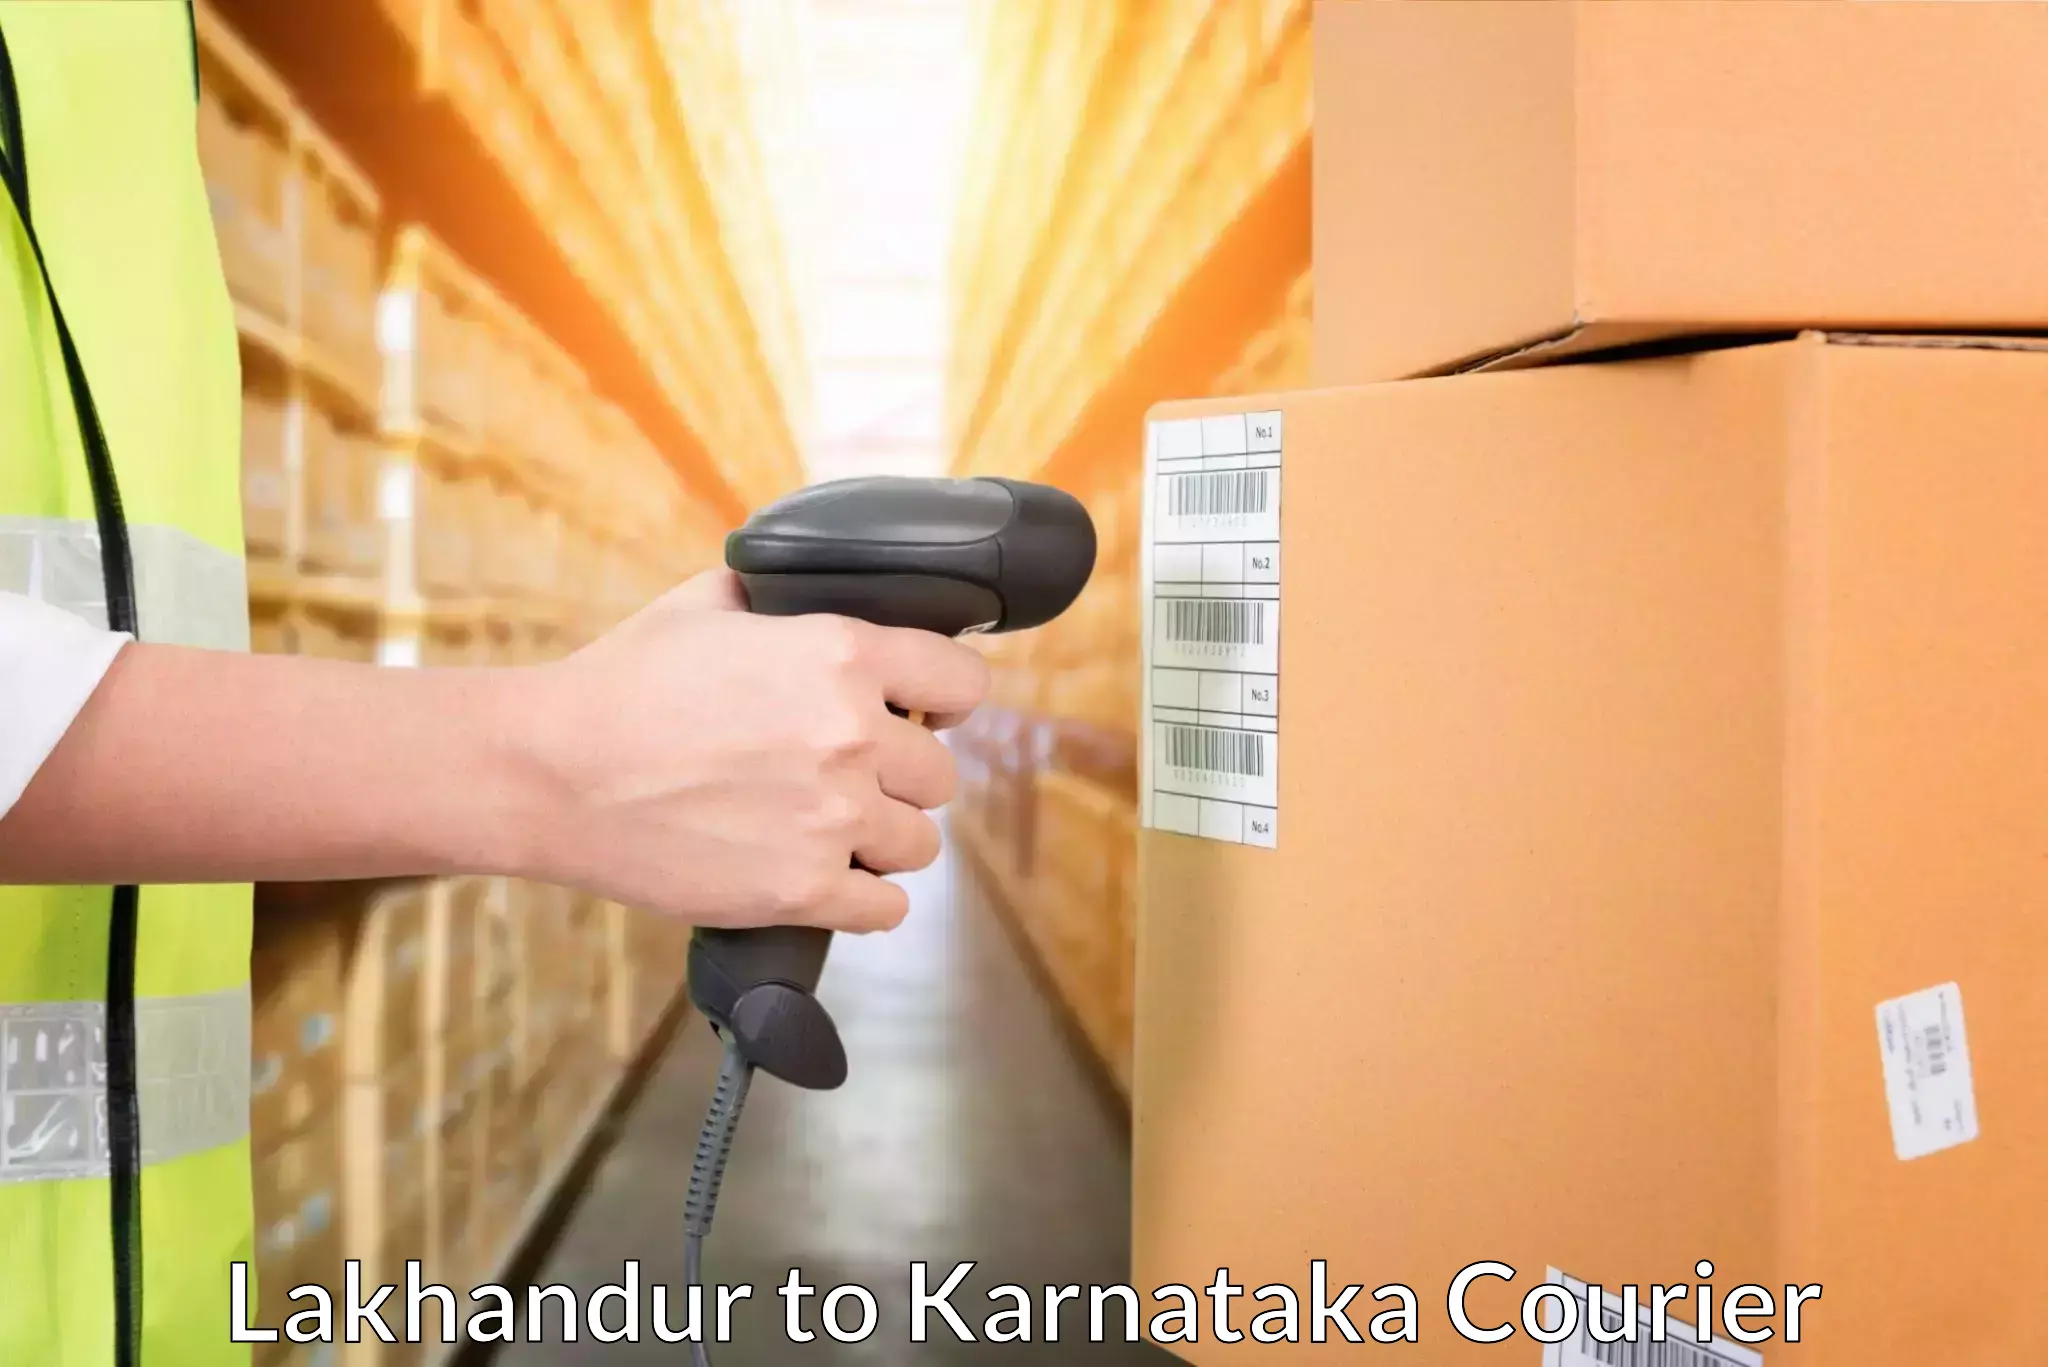 Subscription-based courier Lakhandur to Yenepoya Mangalore